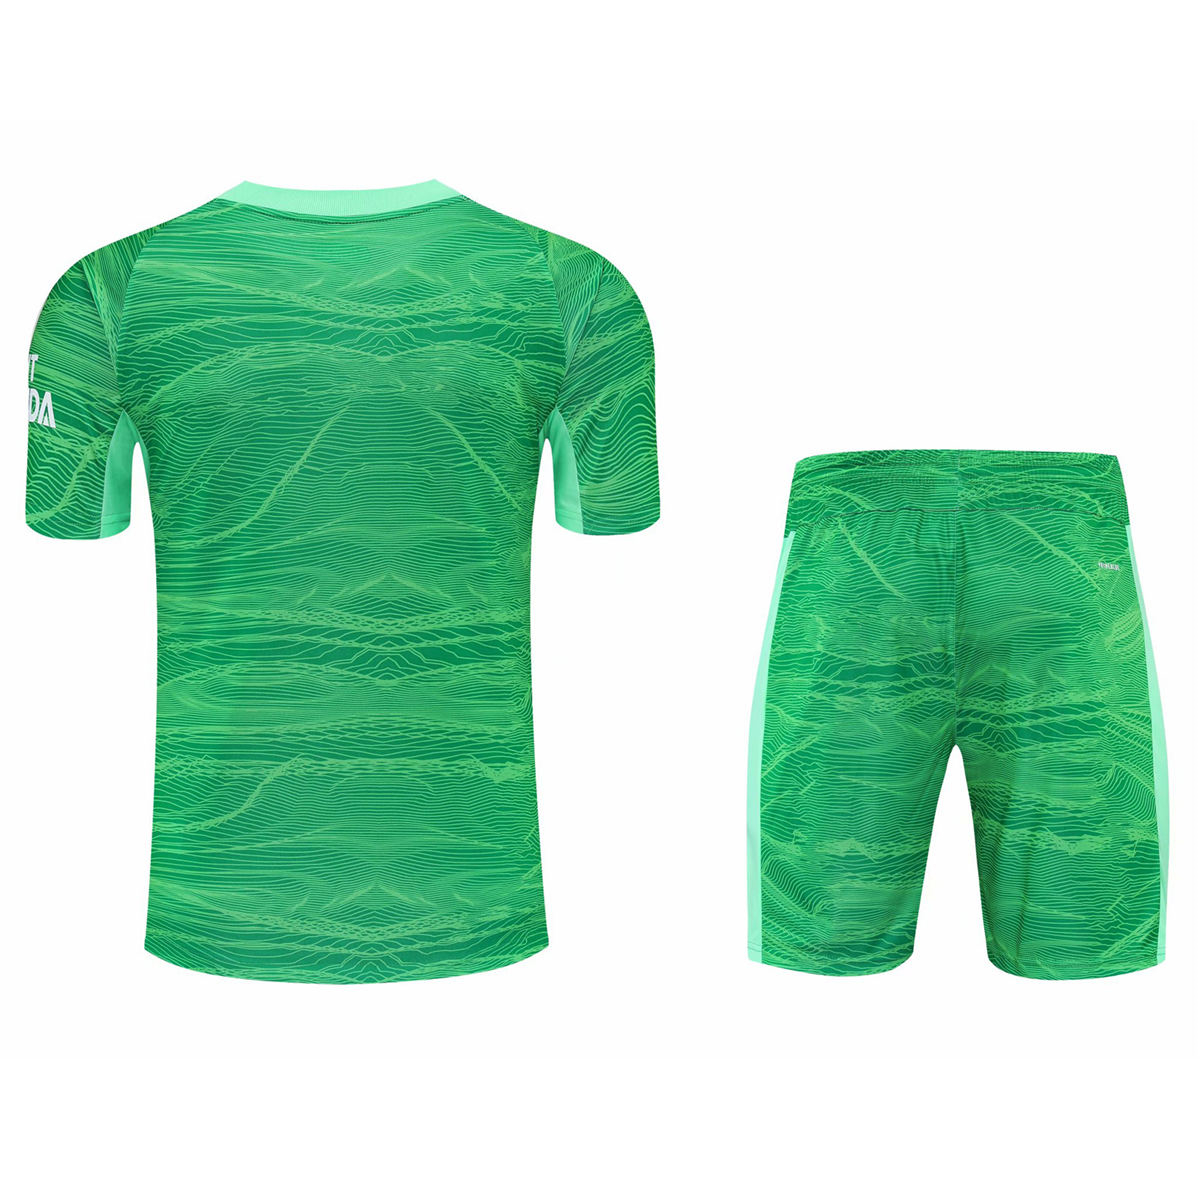 Arsenal Soccer Jersey + Short Replica Goalkeeper Green Mens 2021/22